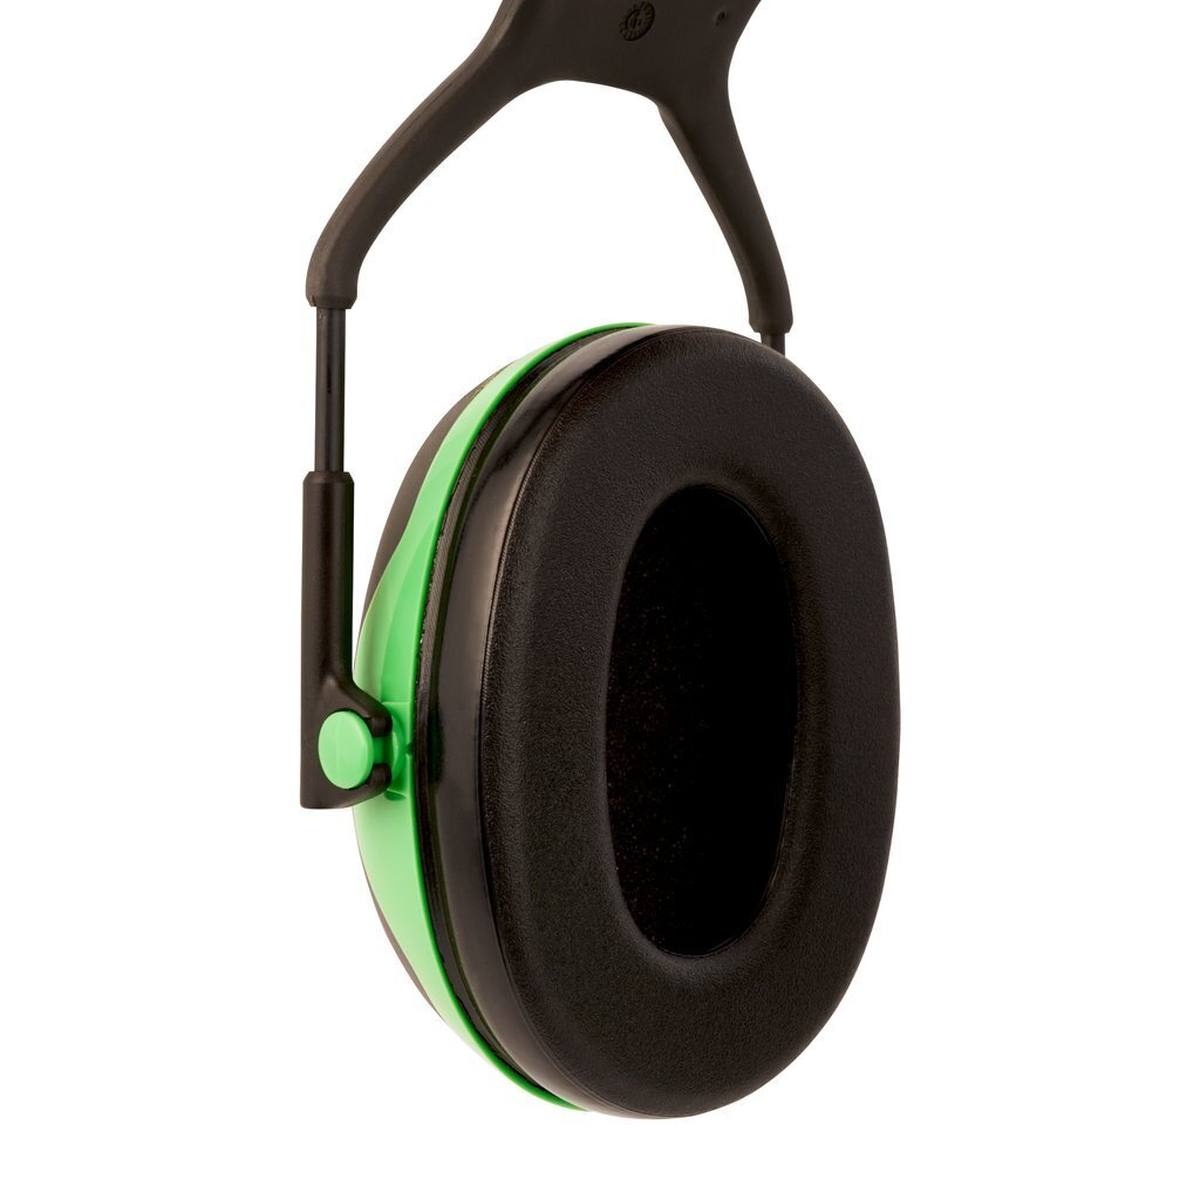 3M Peltor Kapselgehörschutz, X1A Gehörschutzkapsel, grün, SNR = 27 dB